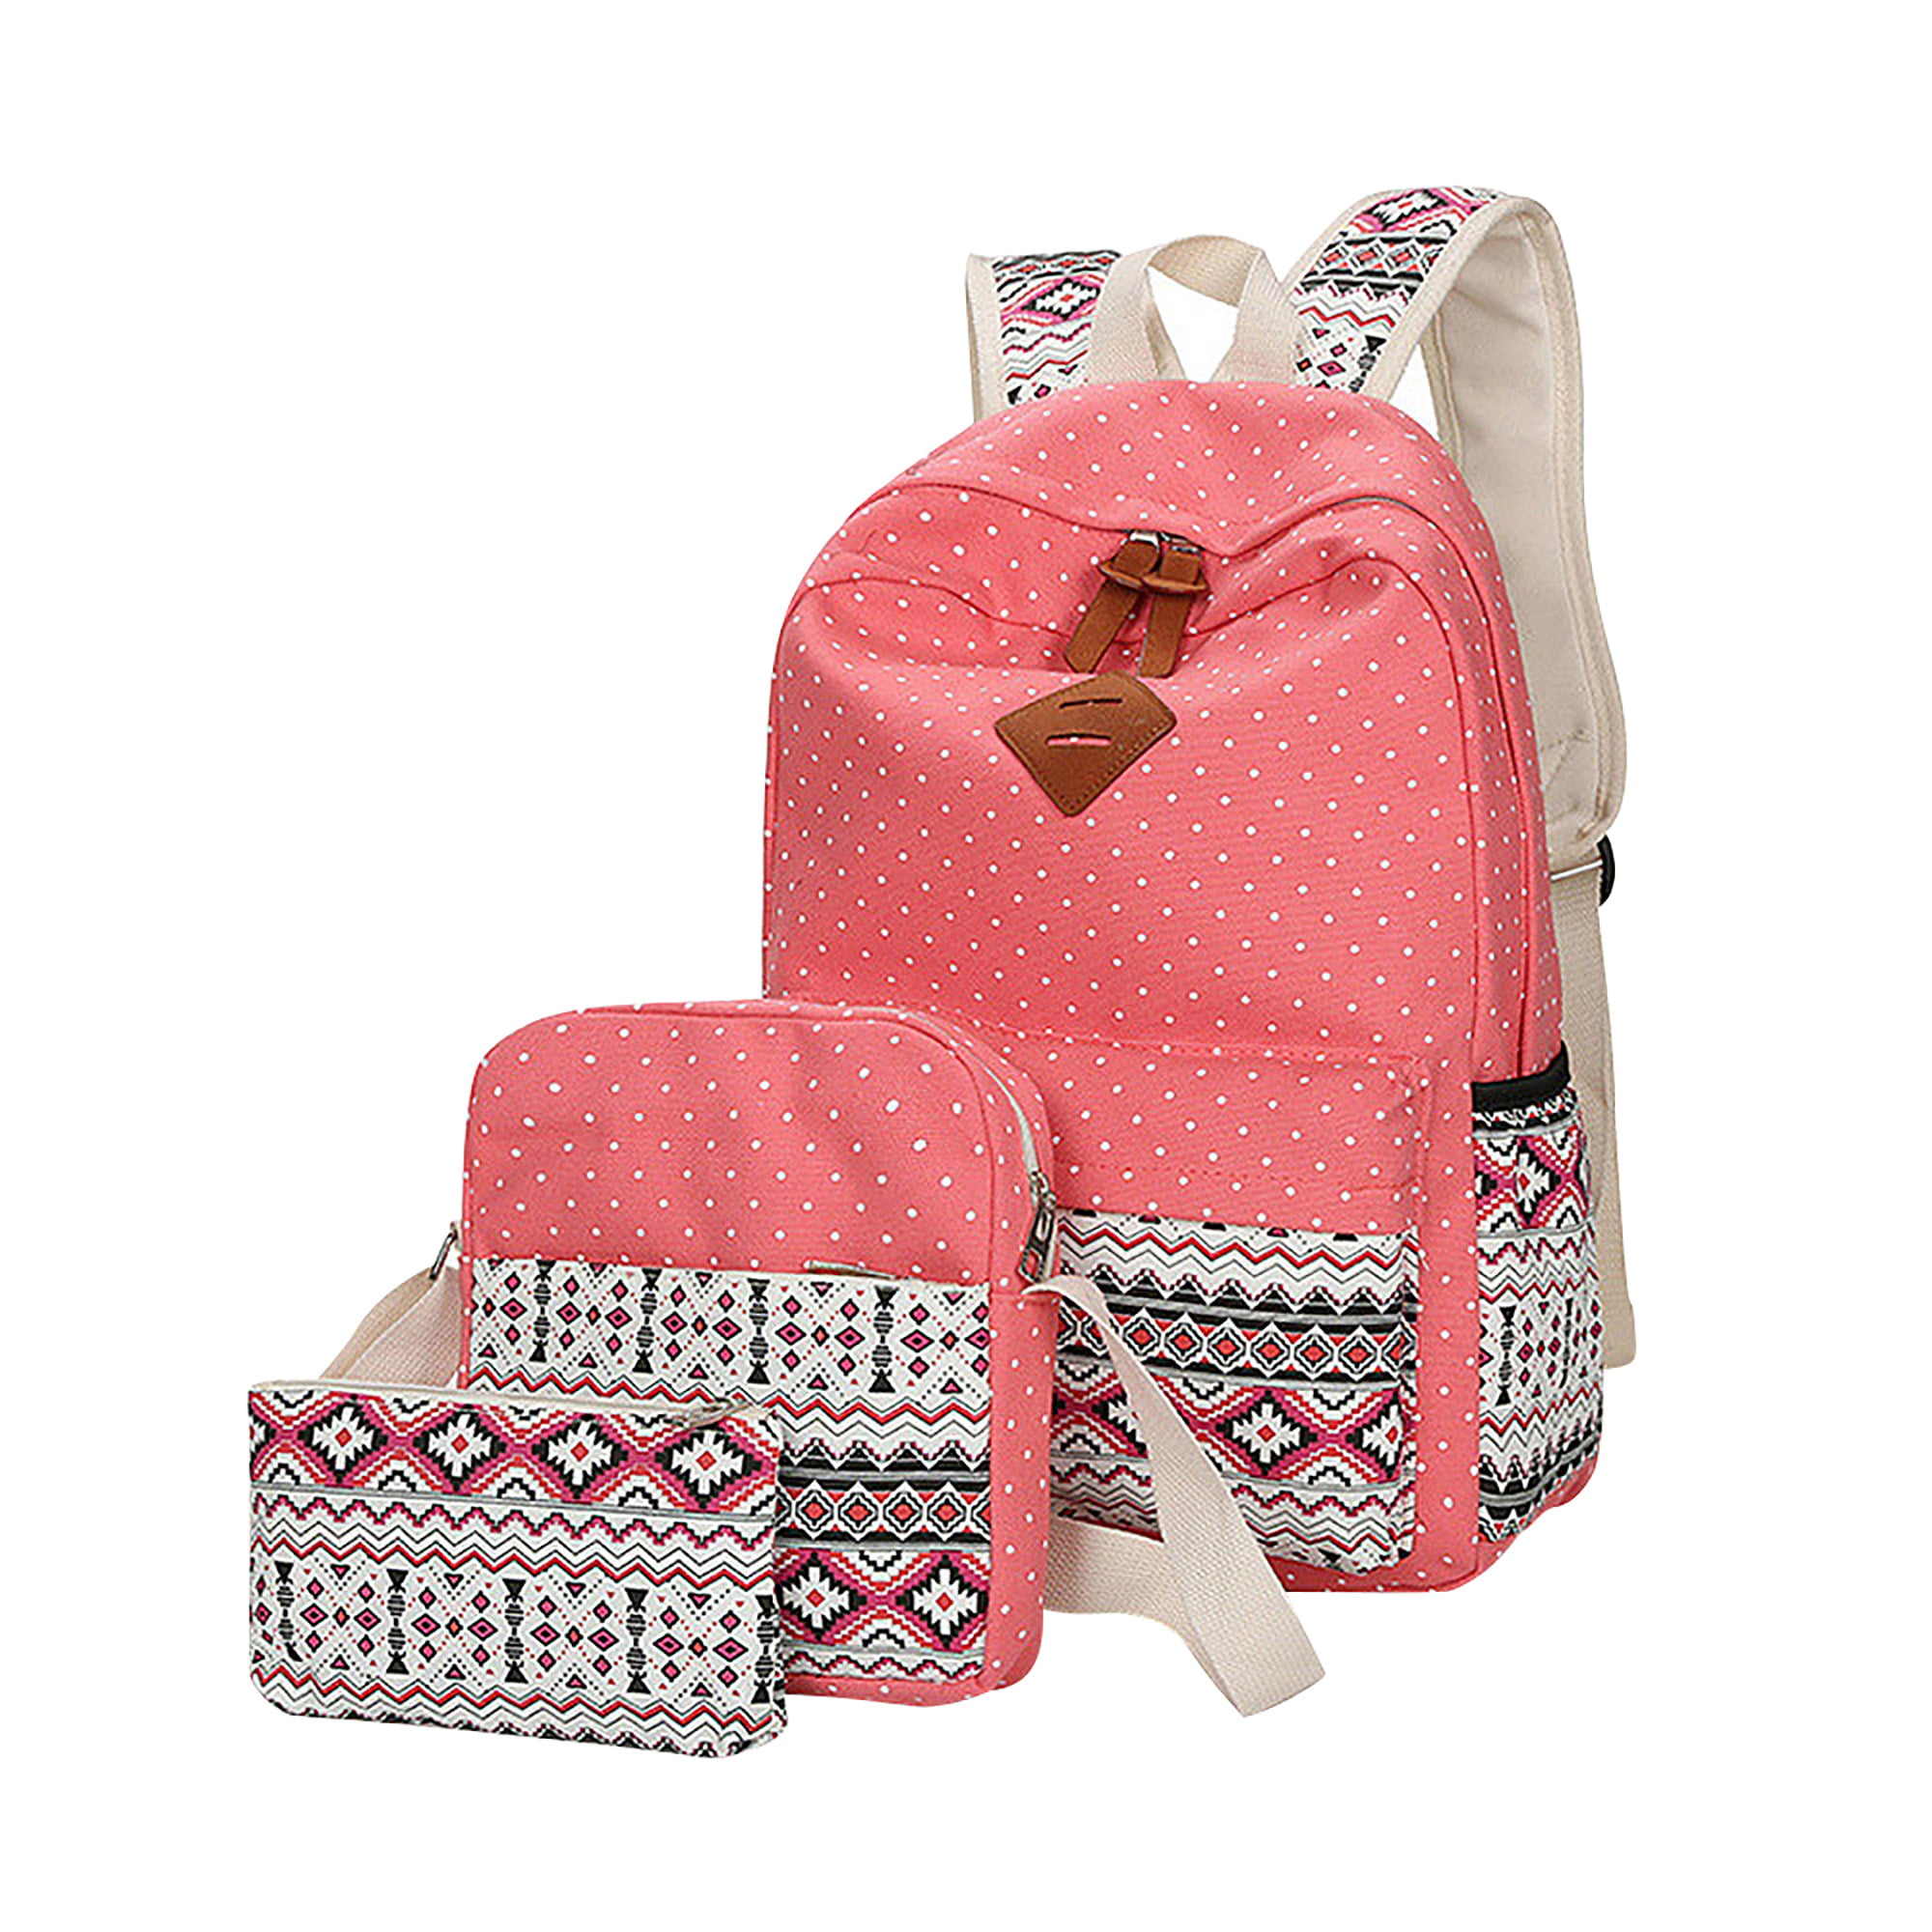 Rucksack Backpack Leisure Sport Travel School Backpack Hiking Mens Womens Pink